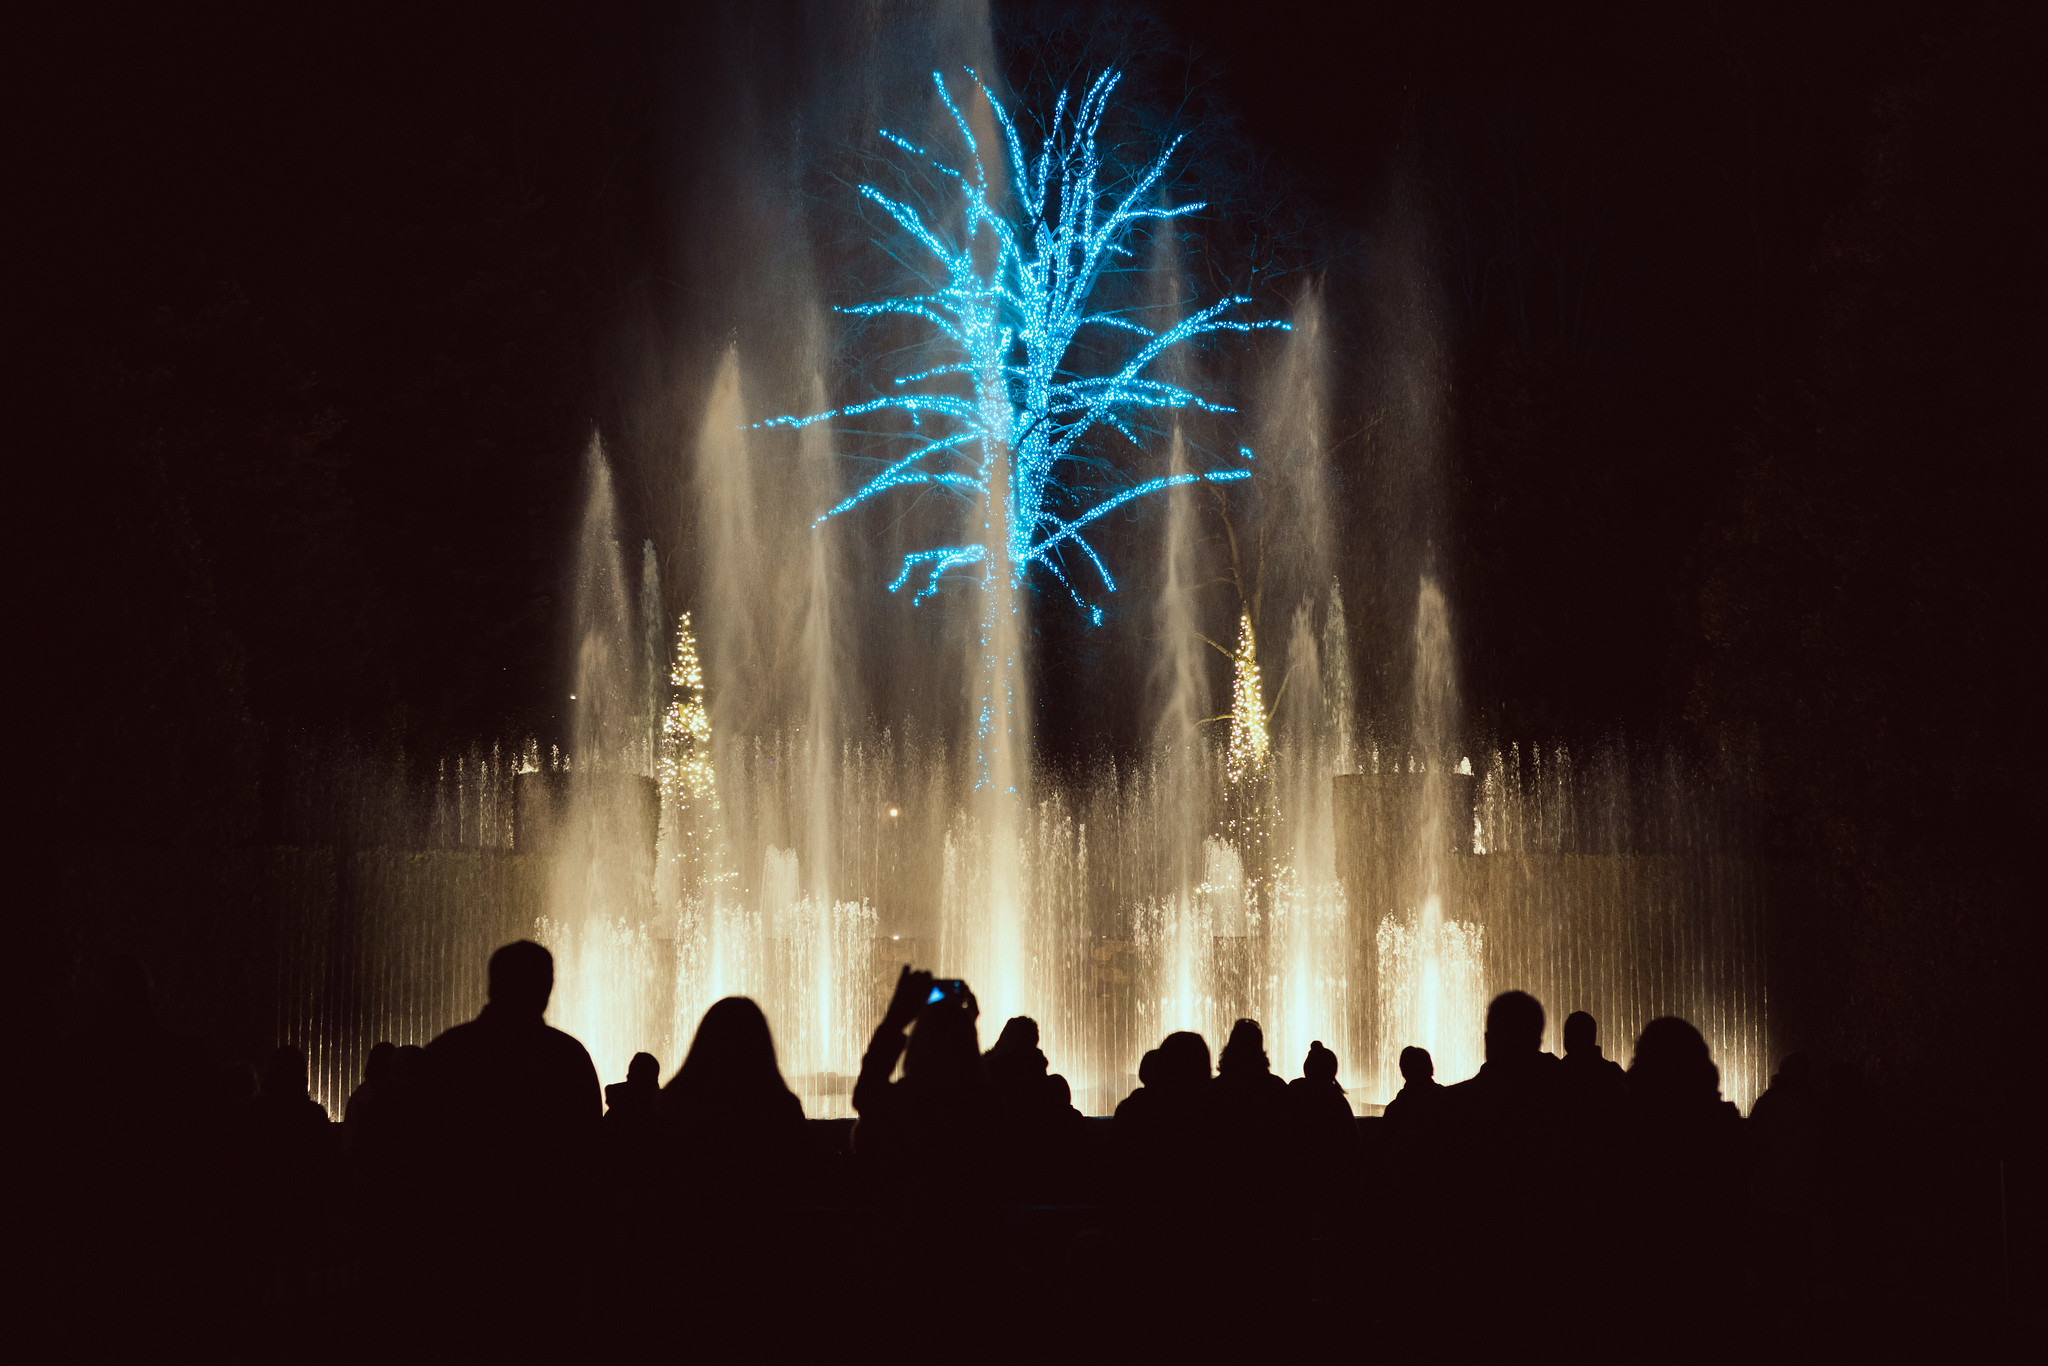 Fountain Show